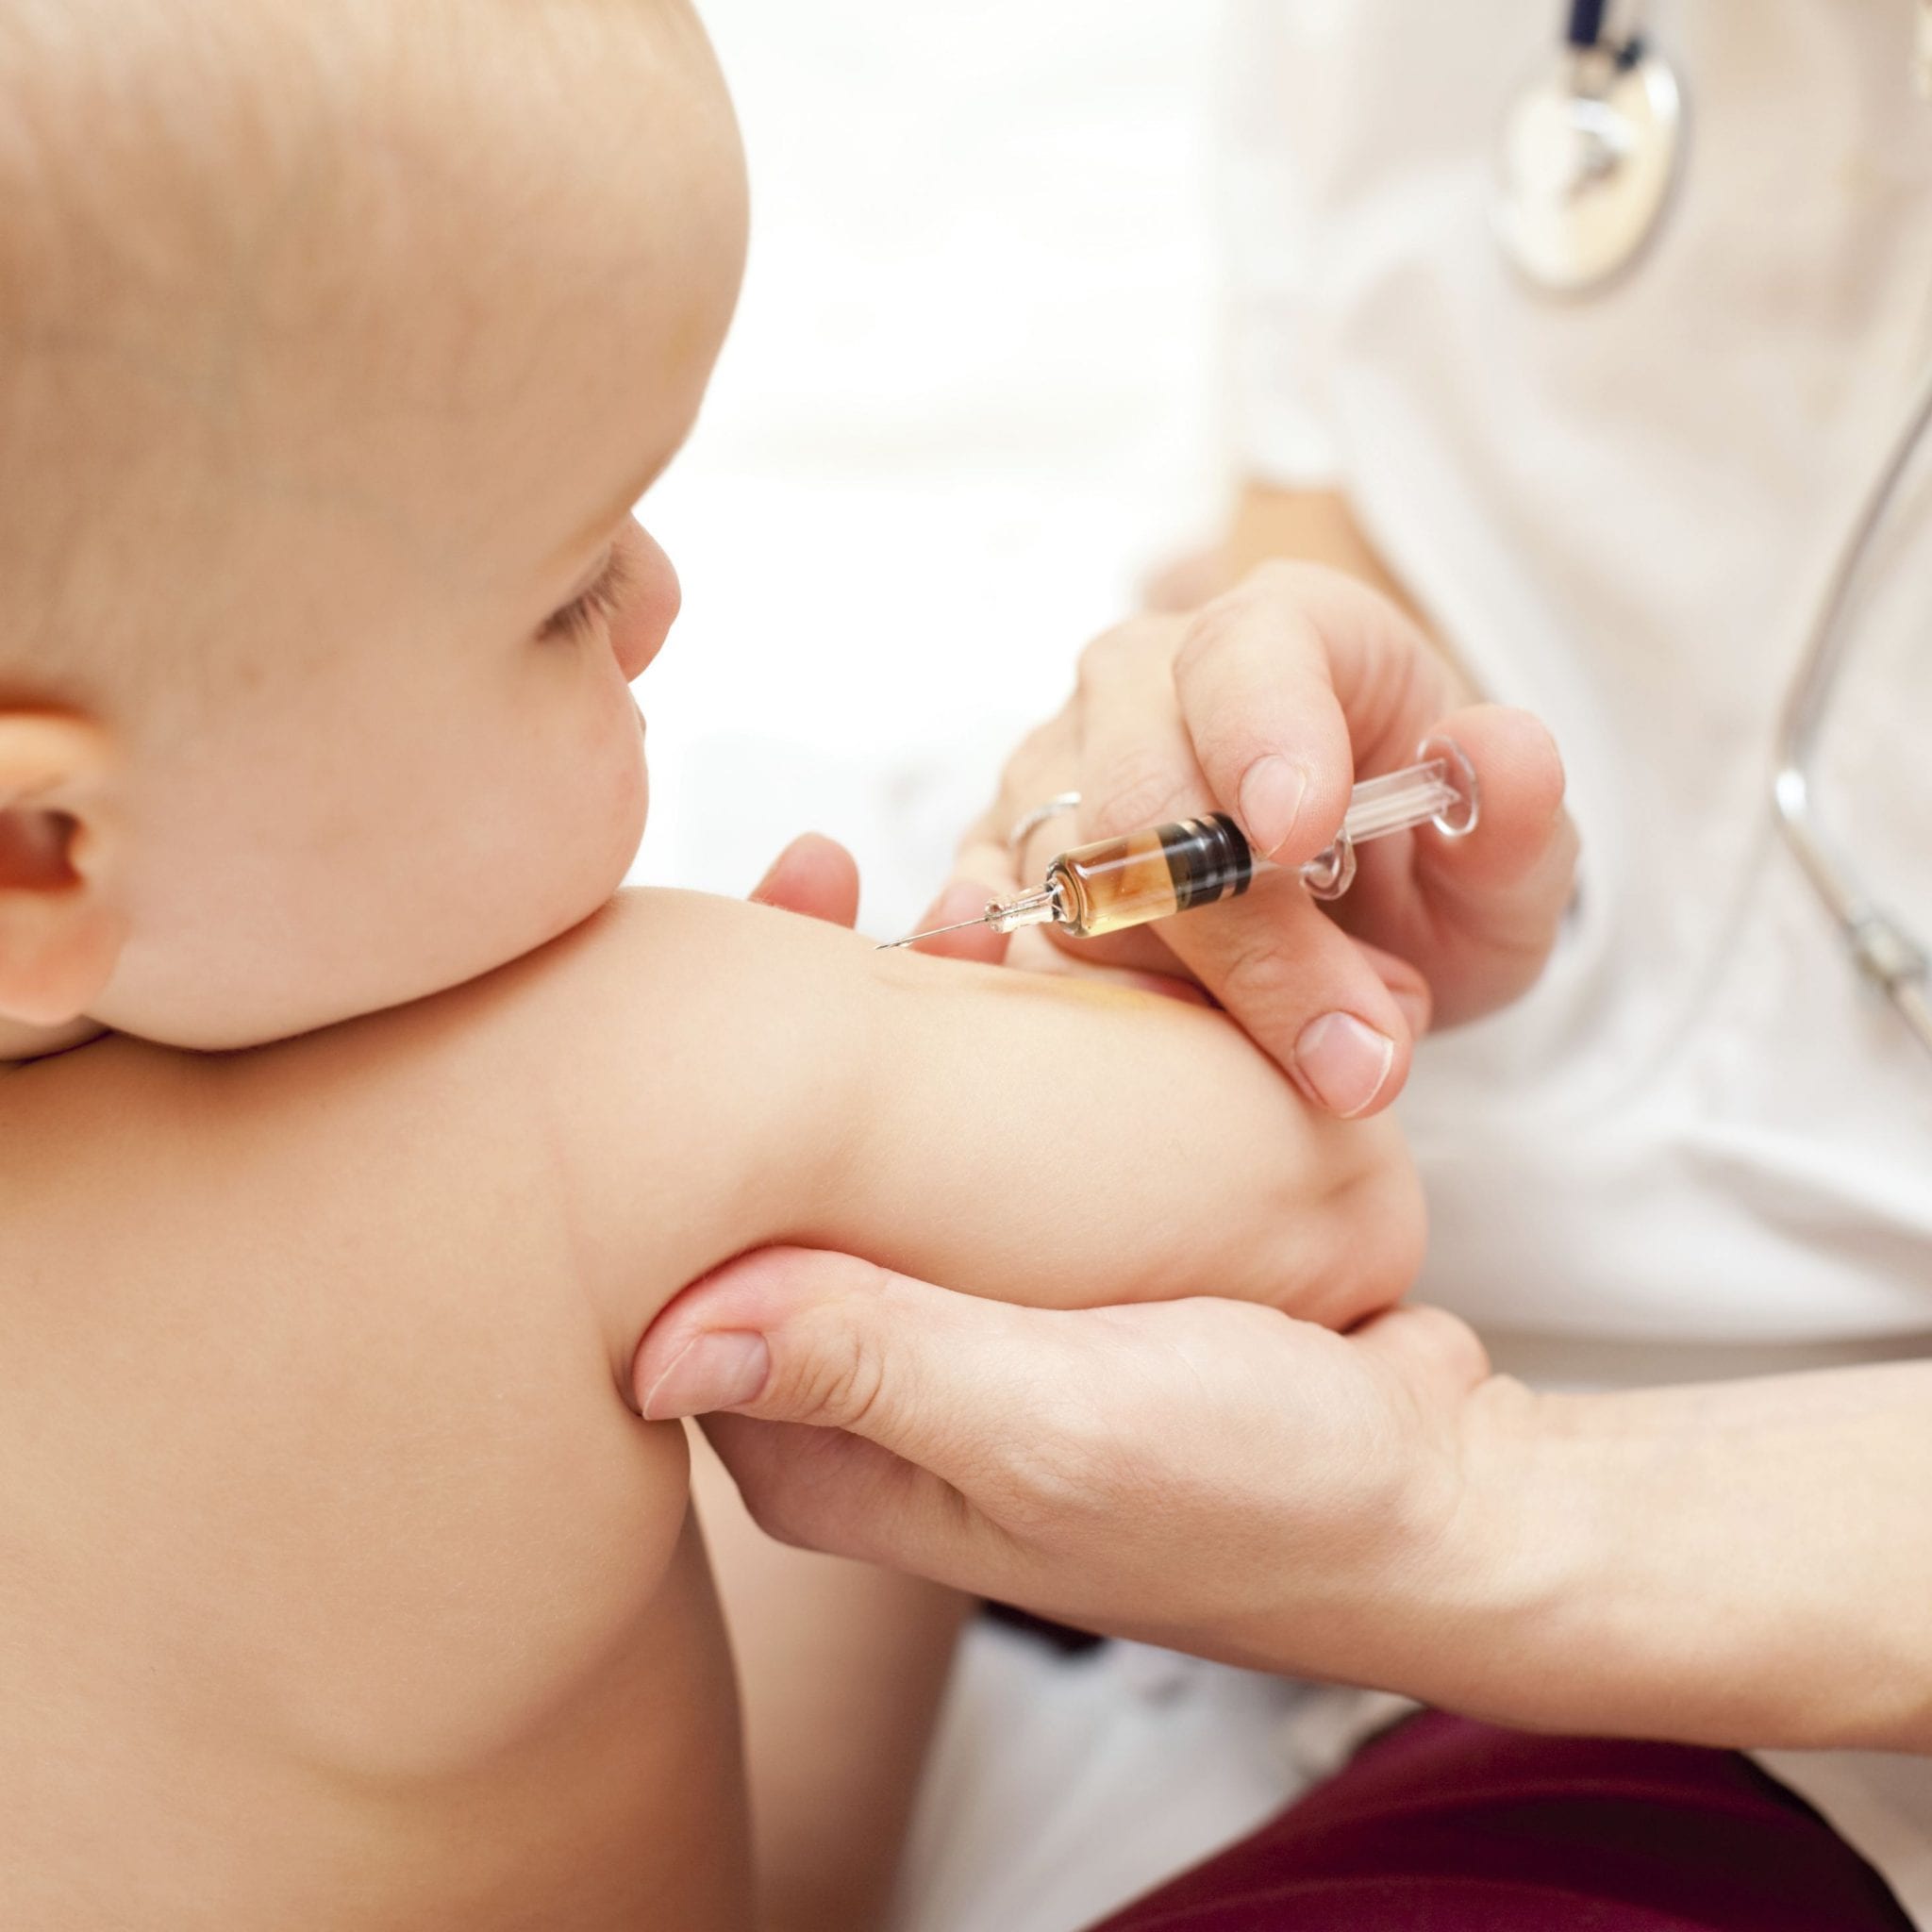 Quais são as contraindicações da vacinação?